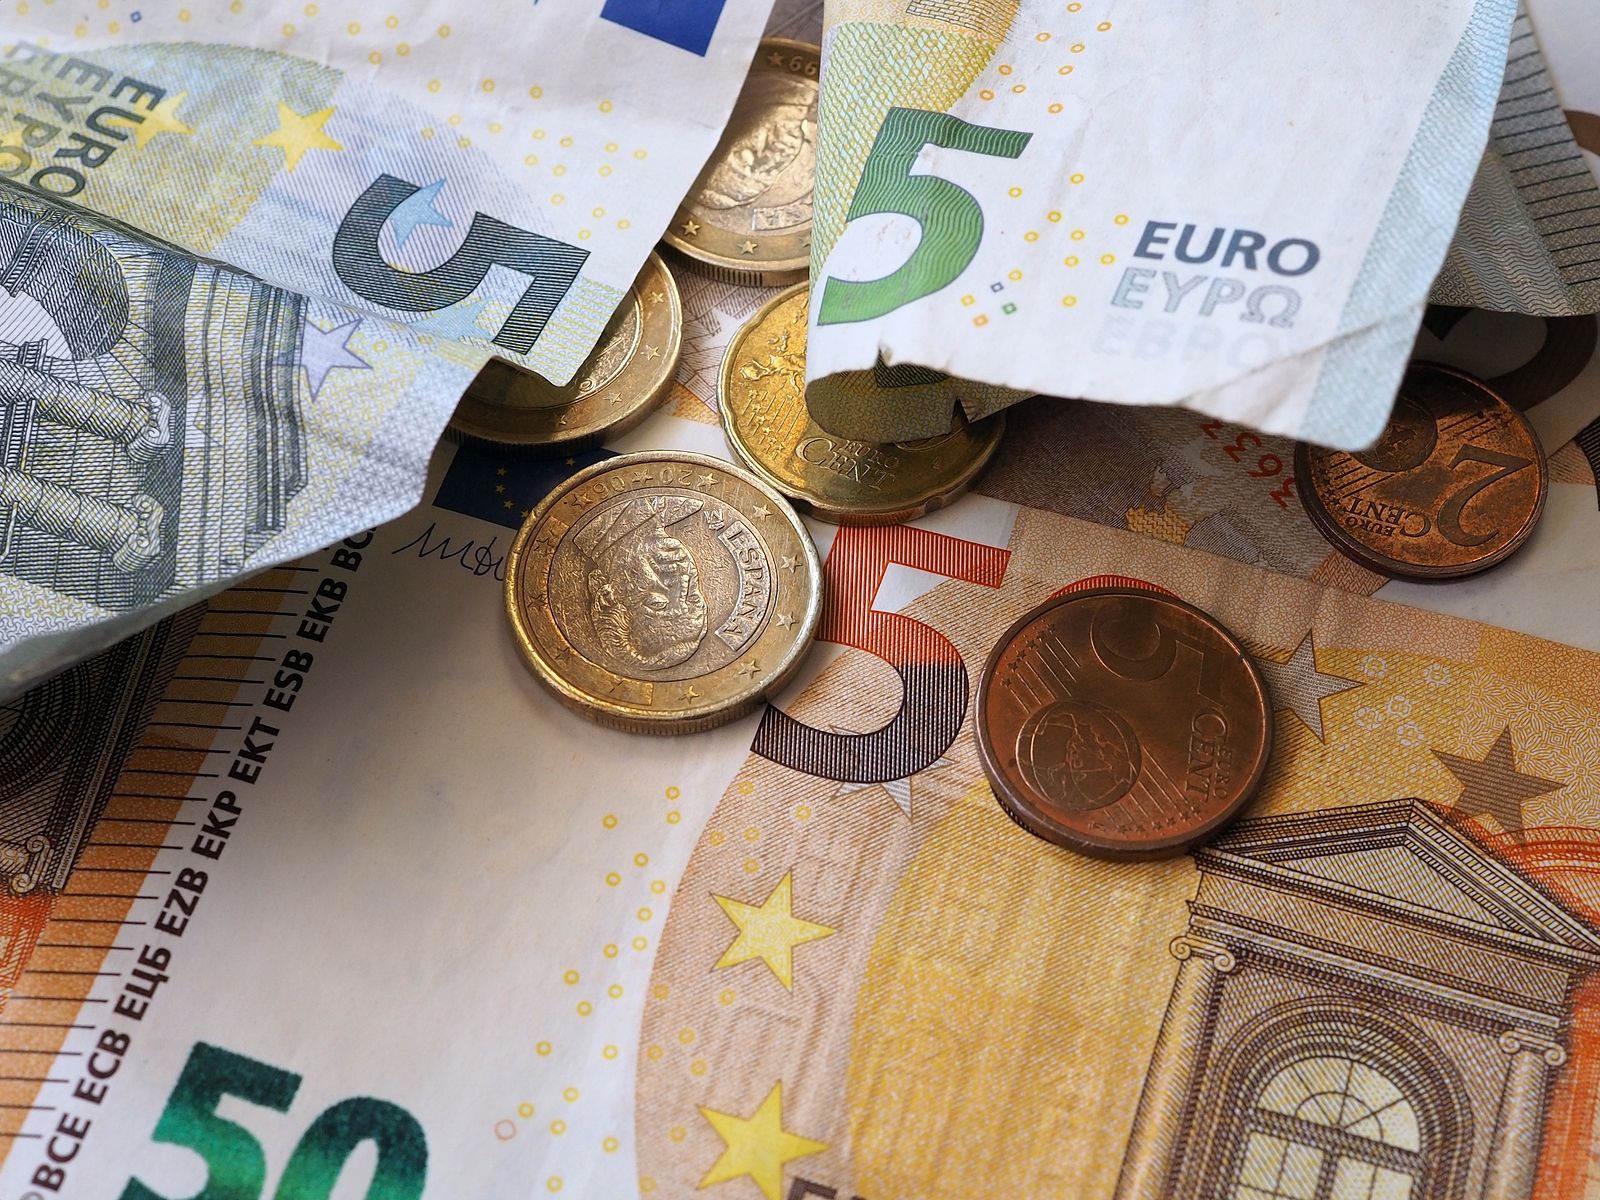 Pensiones de viudedad: 2,4 millones de pagas no llegan a 900 euros de media en marzo